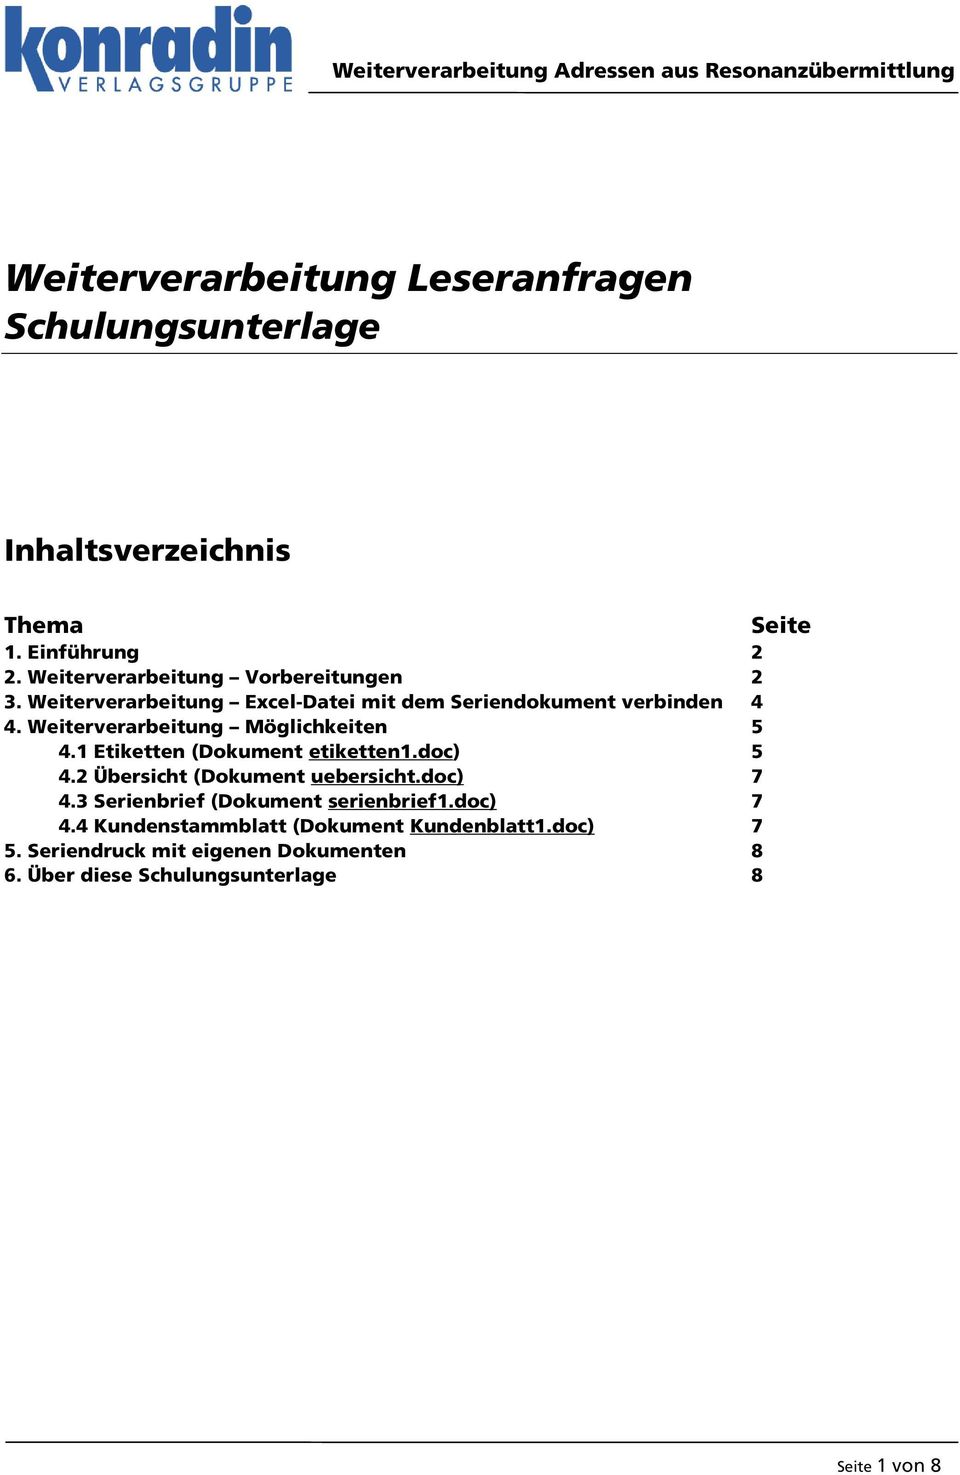 Weiterverarbeitung Möglichkeiten 5 4.1 Etiketten (Dokument etiketten1.doc) 5 4.2 Übersicht (Dokument uebersicht.doc) 7 4.